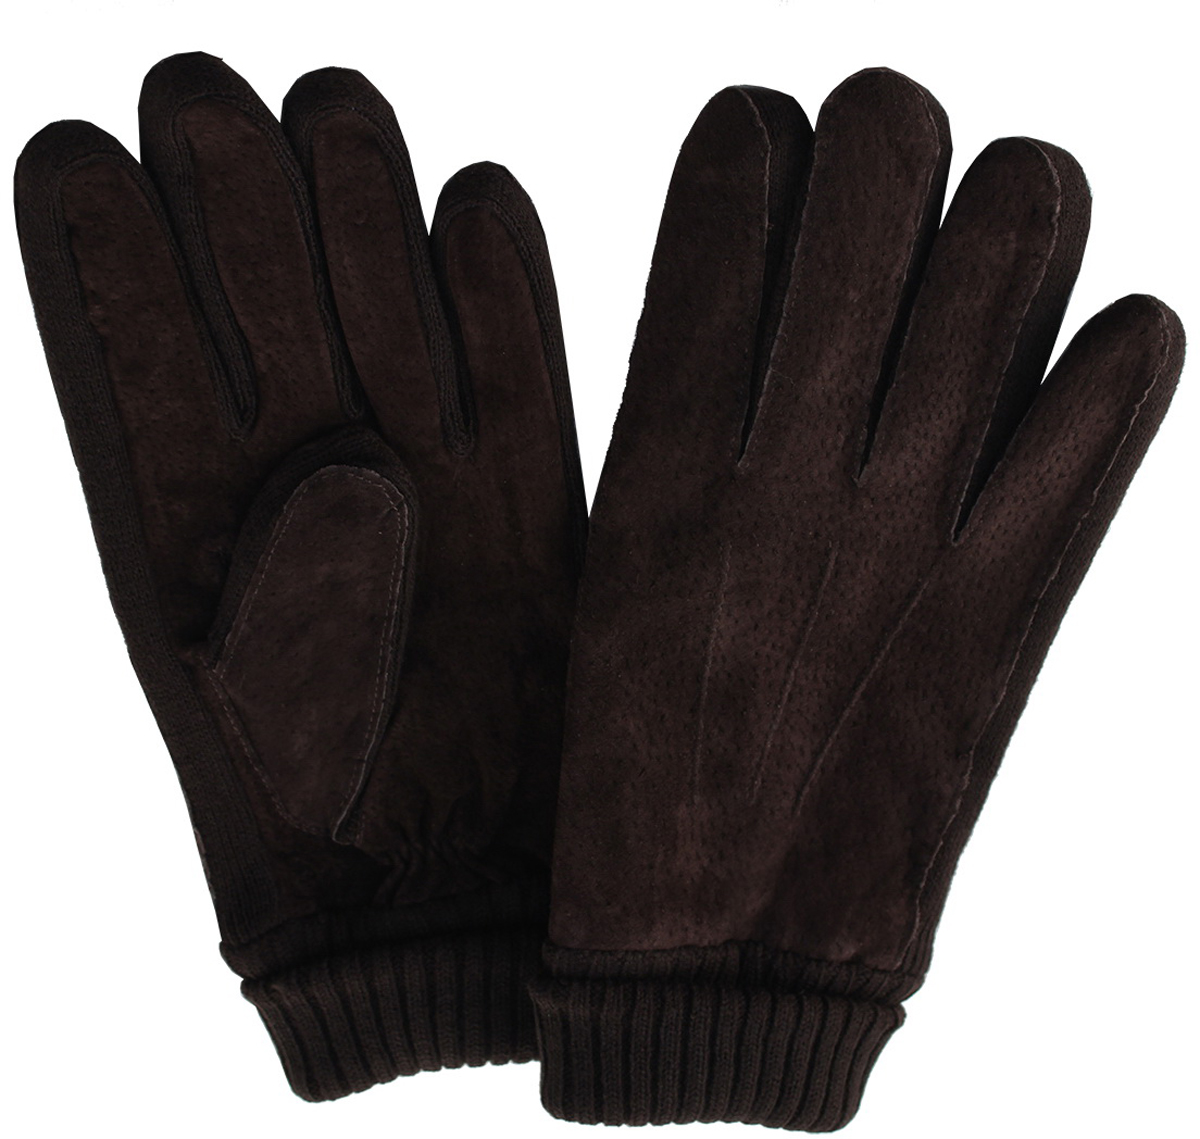 Перчатки мужские Malgrado, цвет: коричневый. 305WL. Размер 9